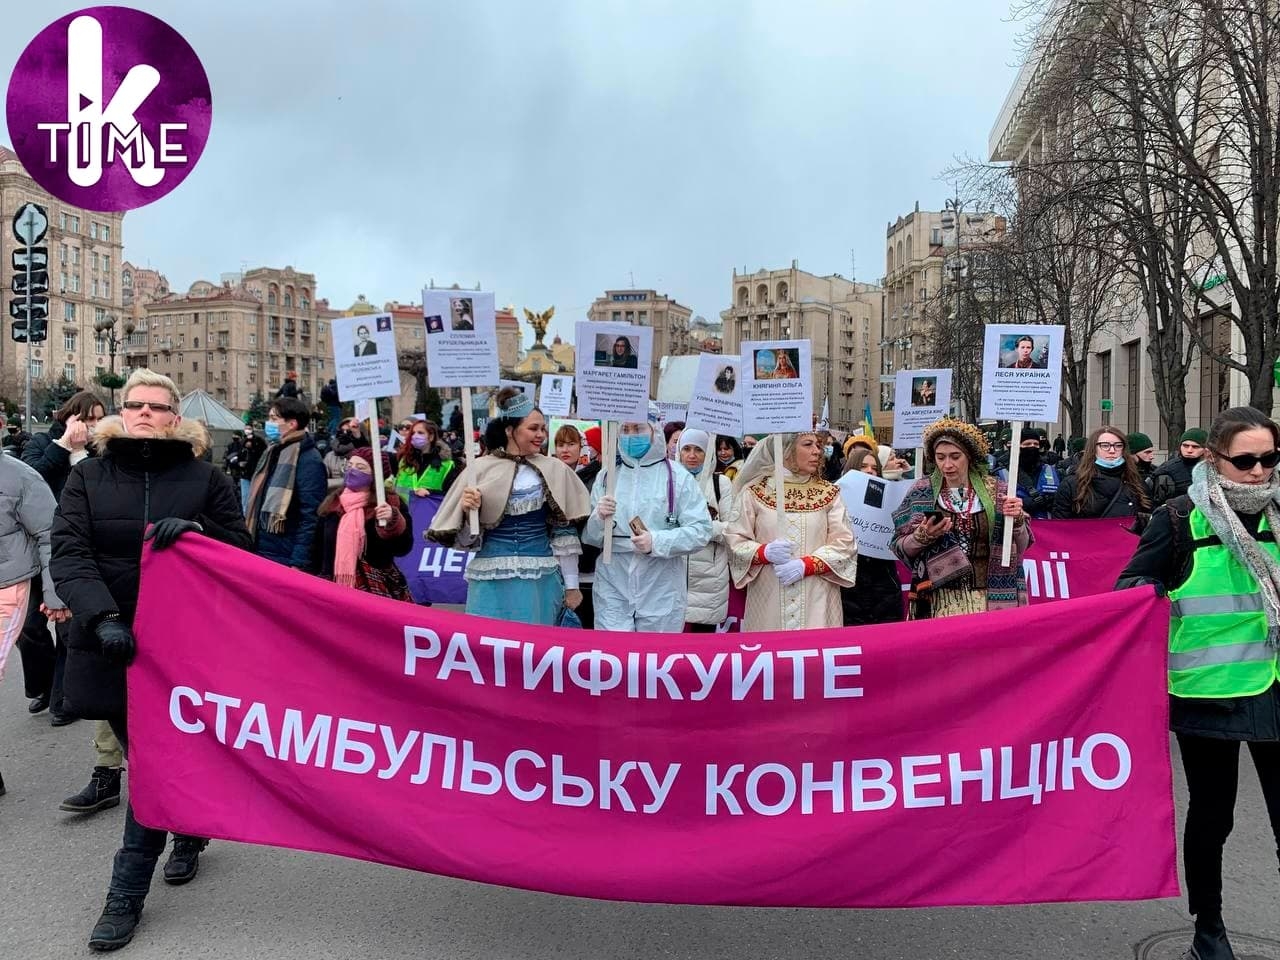 "Свобода, равенство, женская солидарность!": как в Киеве прошел Марш женщин - фото №4